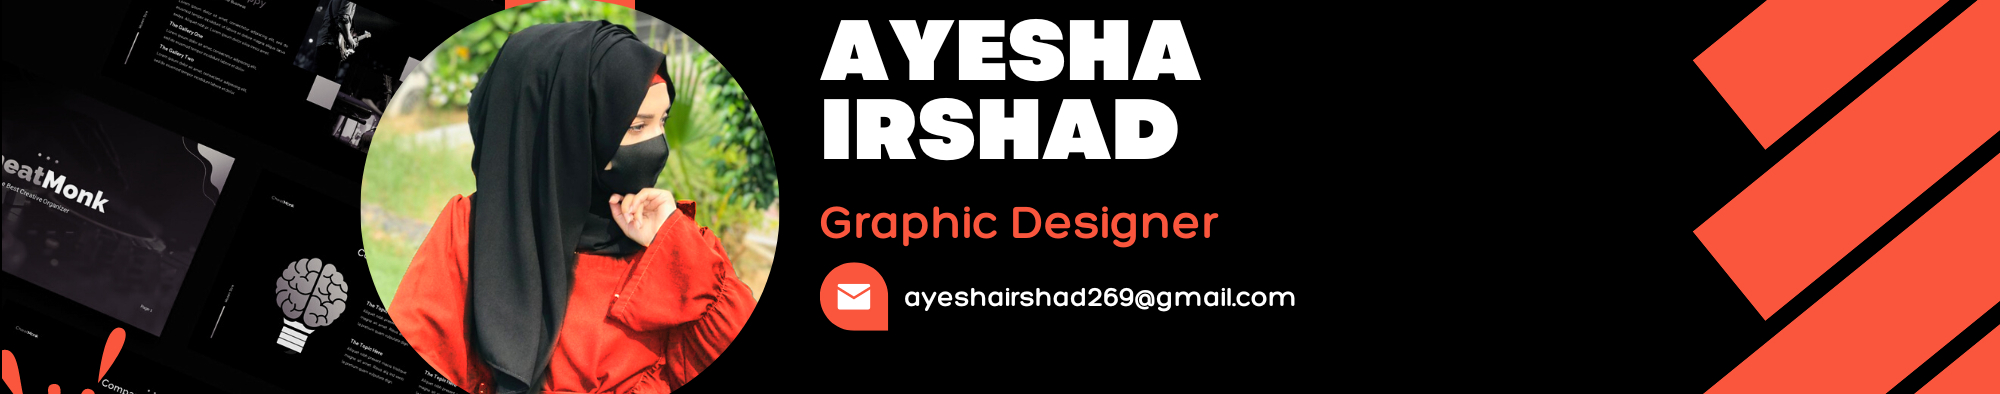 Ayesha Irshad のプロファイルバナー